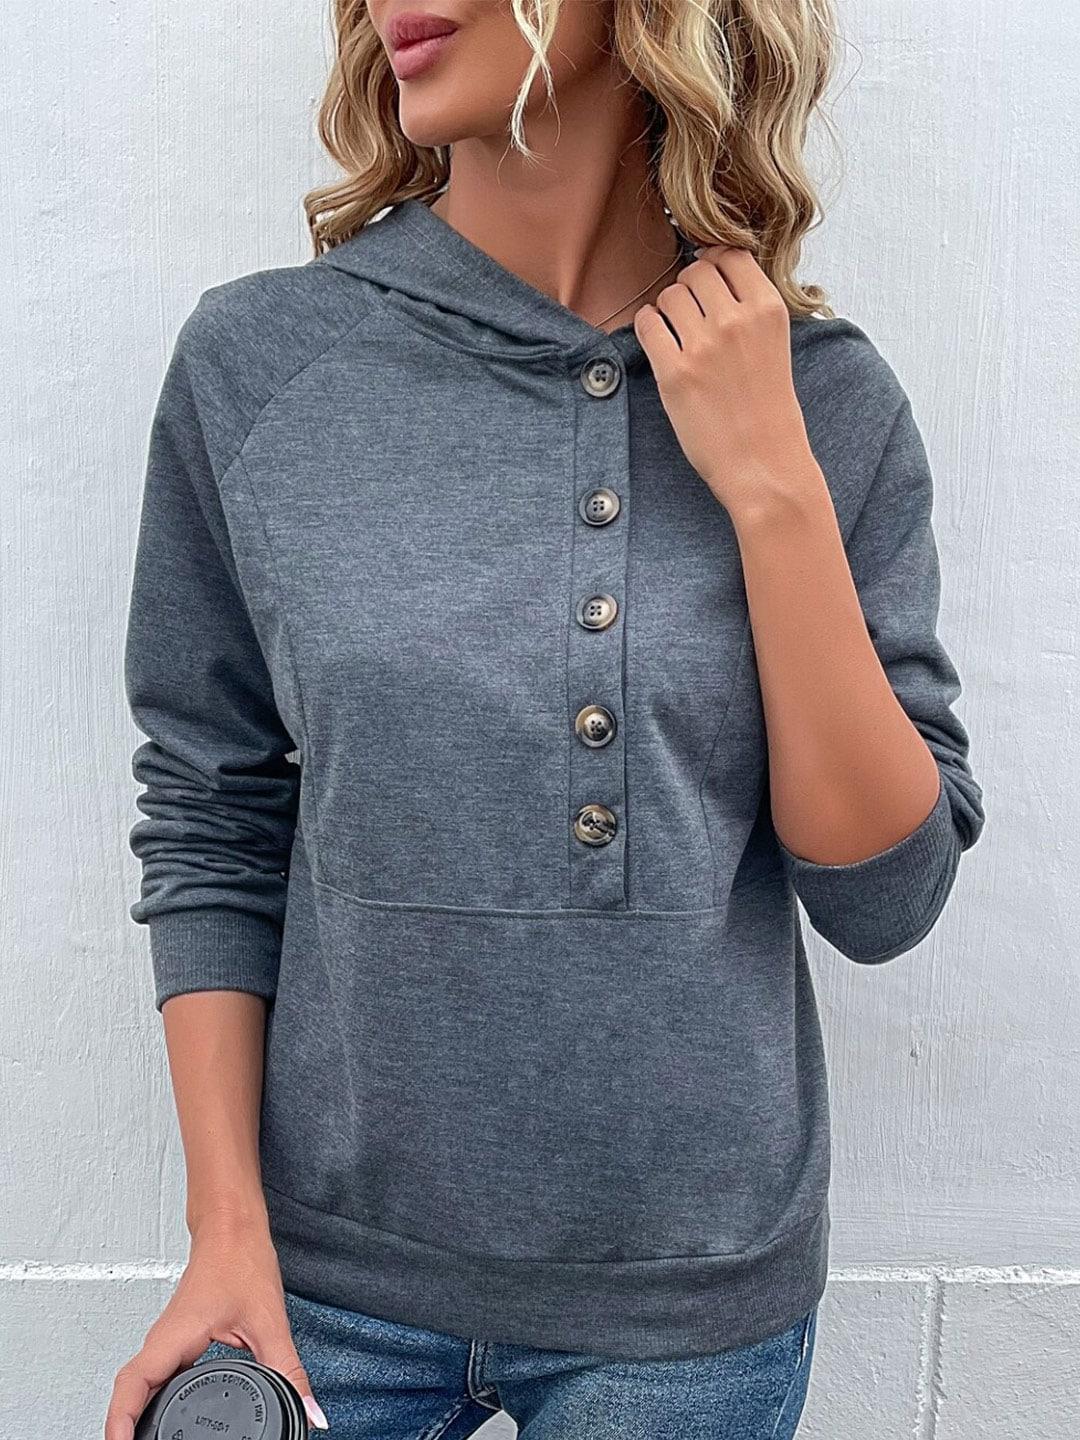 stylecast grey hooded raglan sleeves regular top